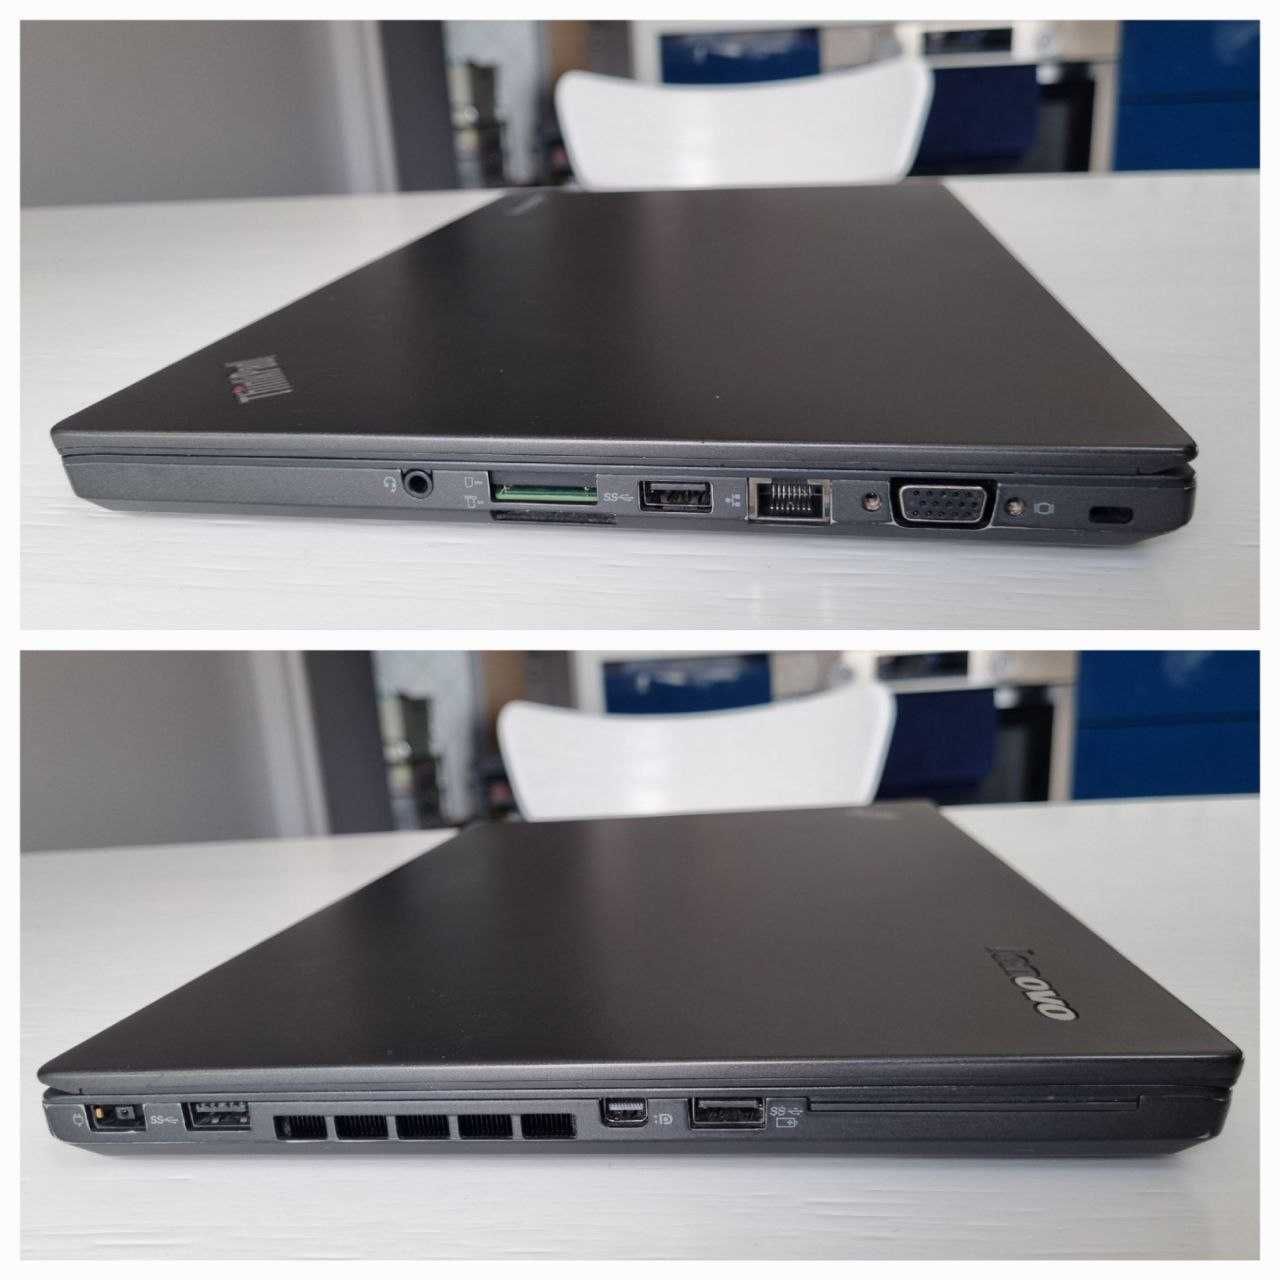 Ноутбук Lenovo T450s i5-5300U 8GB SSD 256Gb, док-станції та БП - 2шт